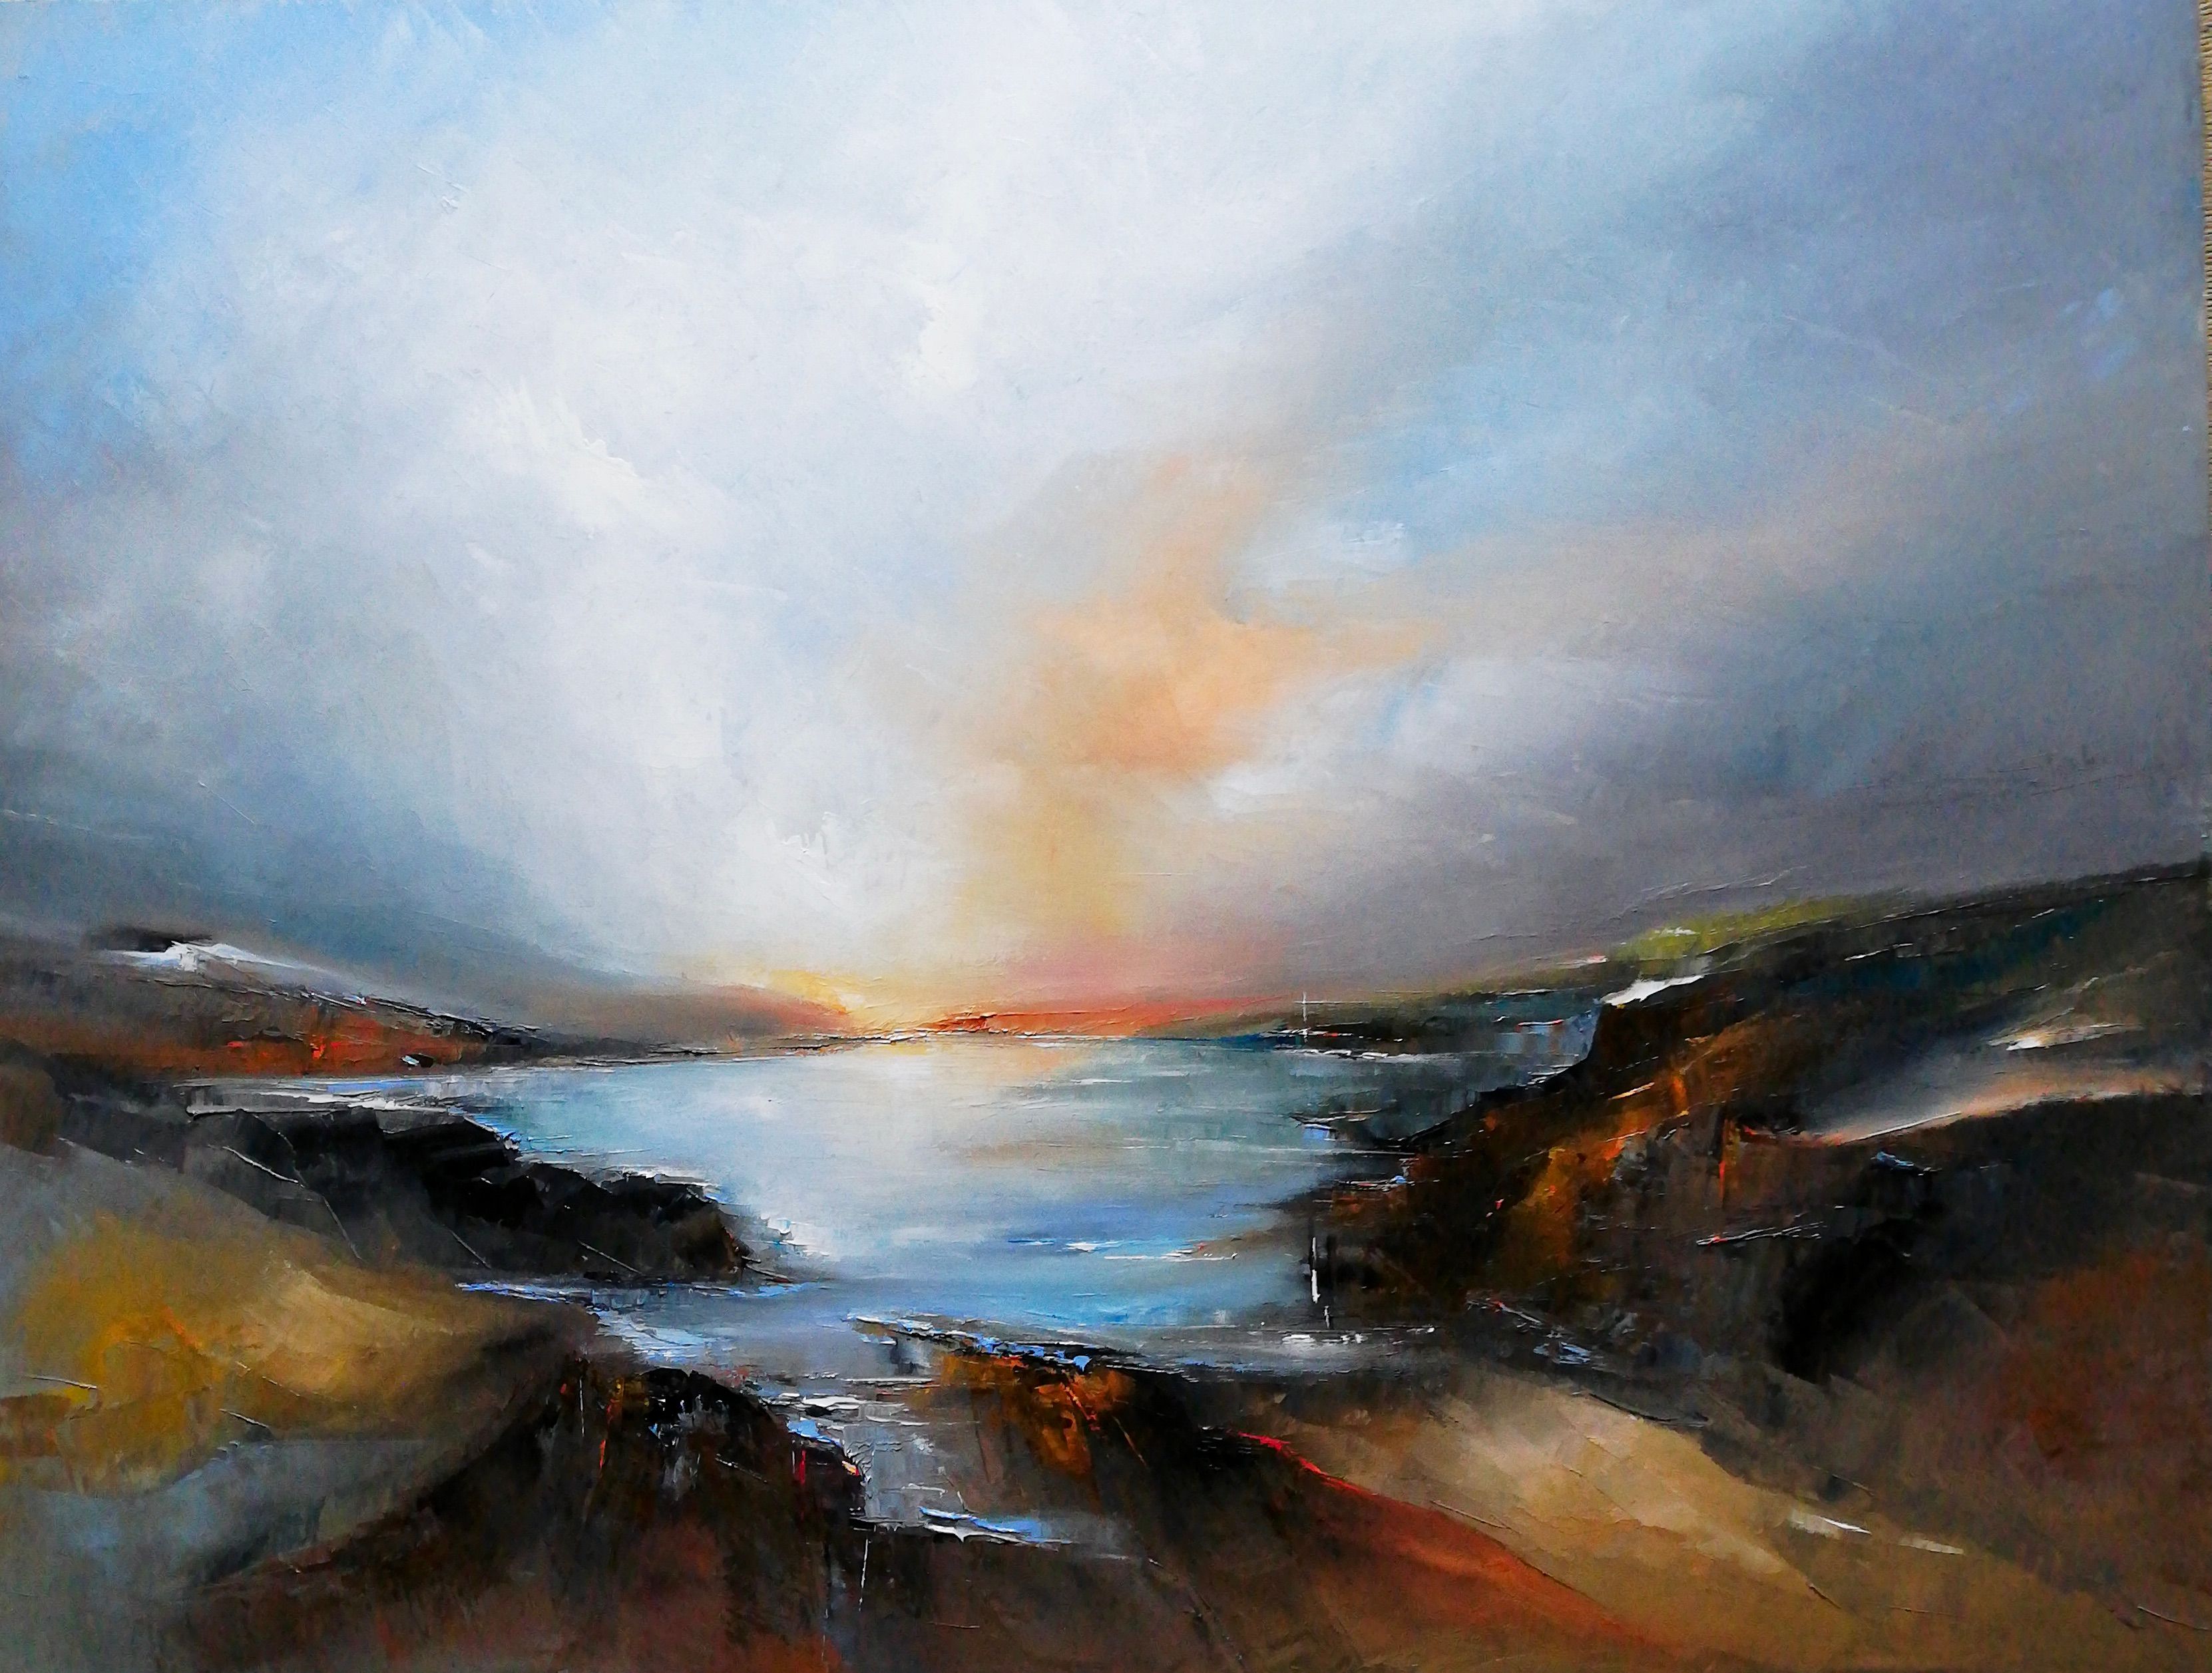 El cuadro "Costa Norte" de Philippe Meslin es un óleo figurativo coloreado de una costa norte francesa.